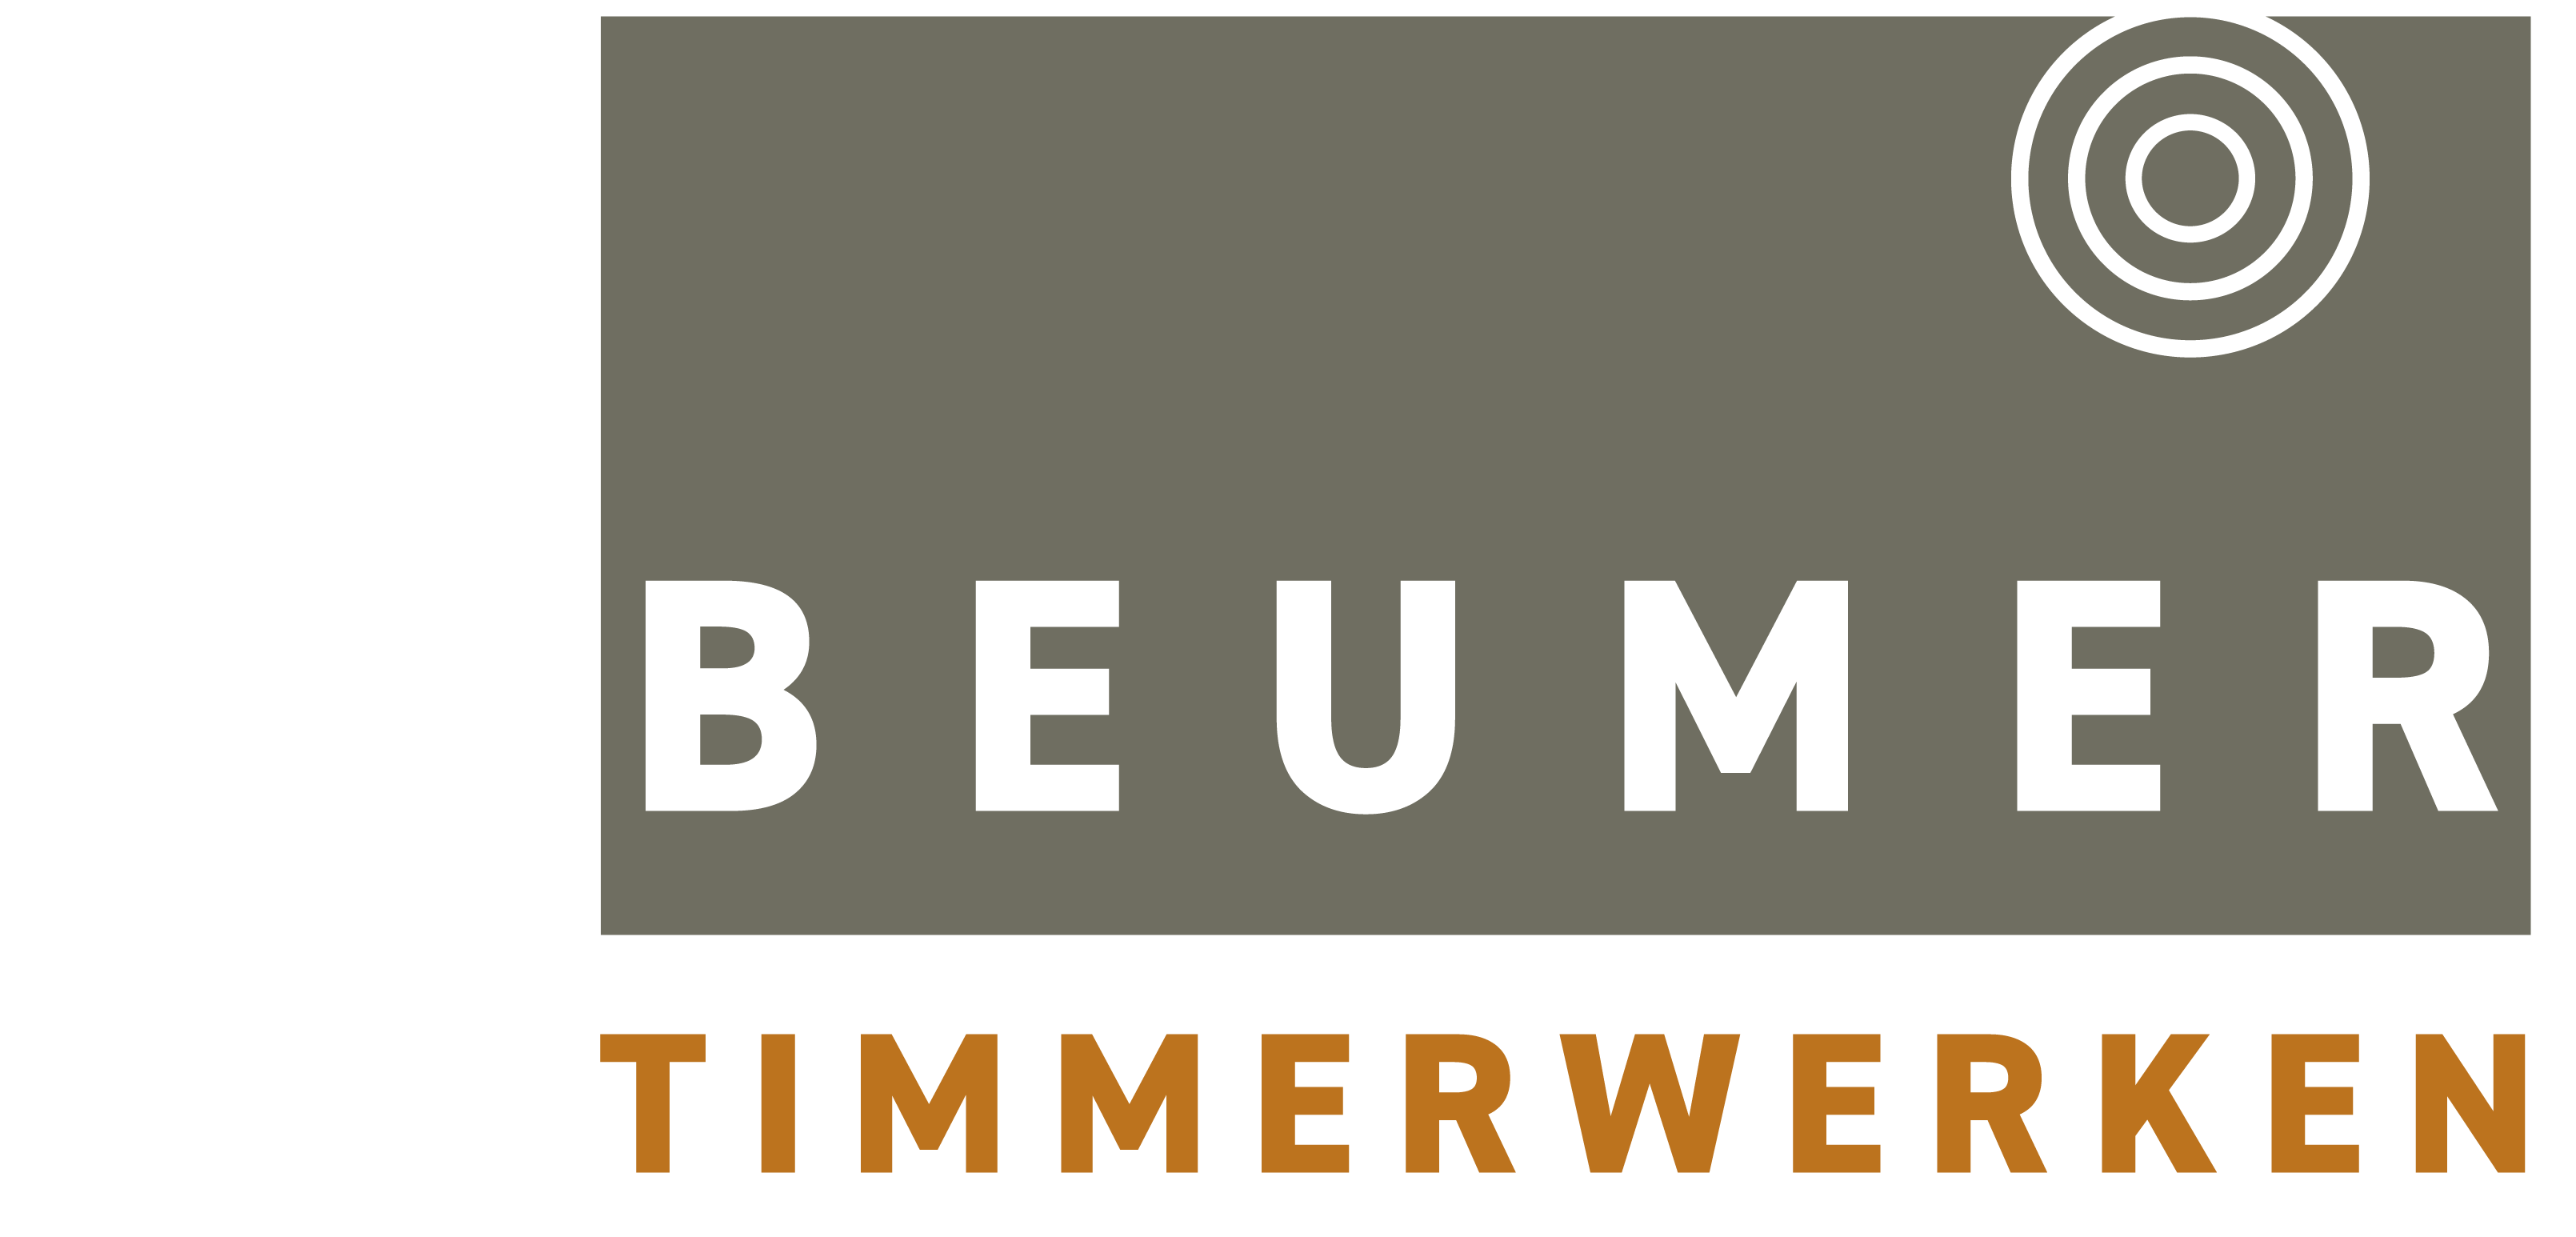 beumer timmerwerken footer logo